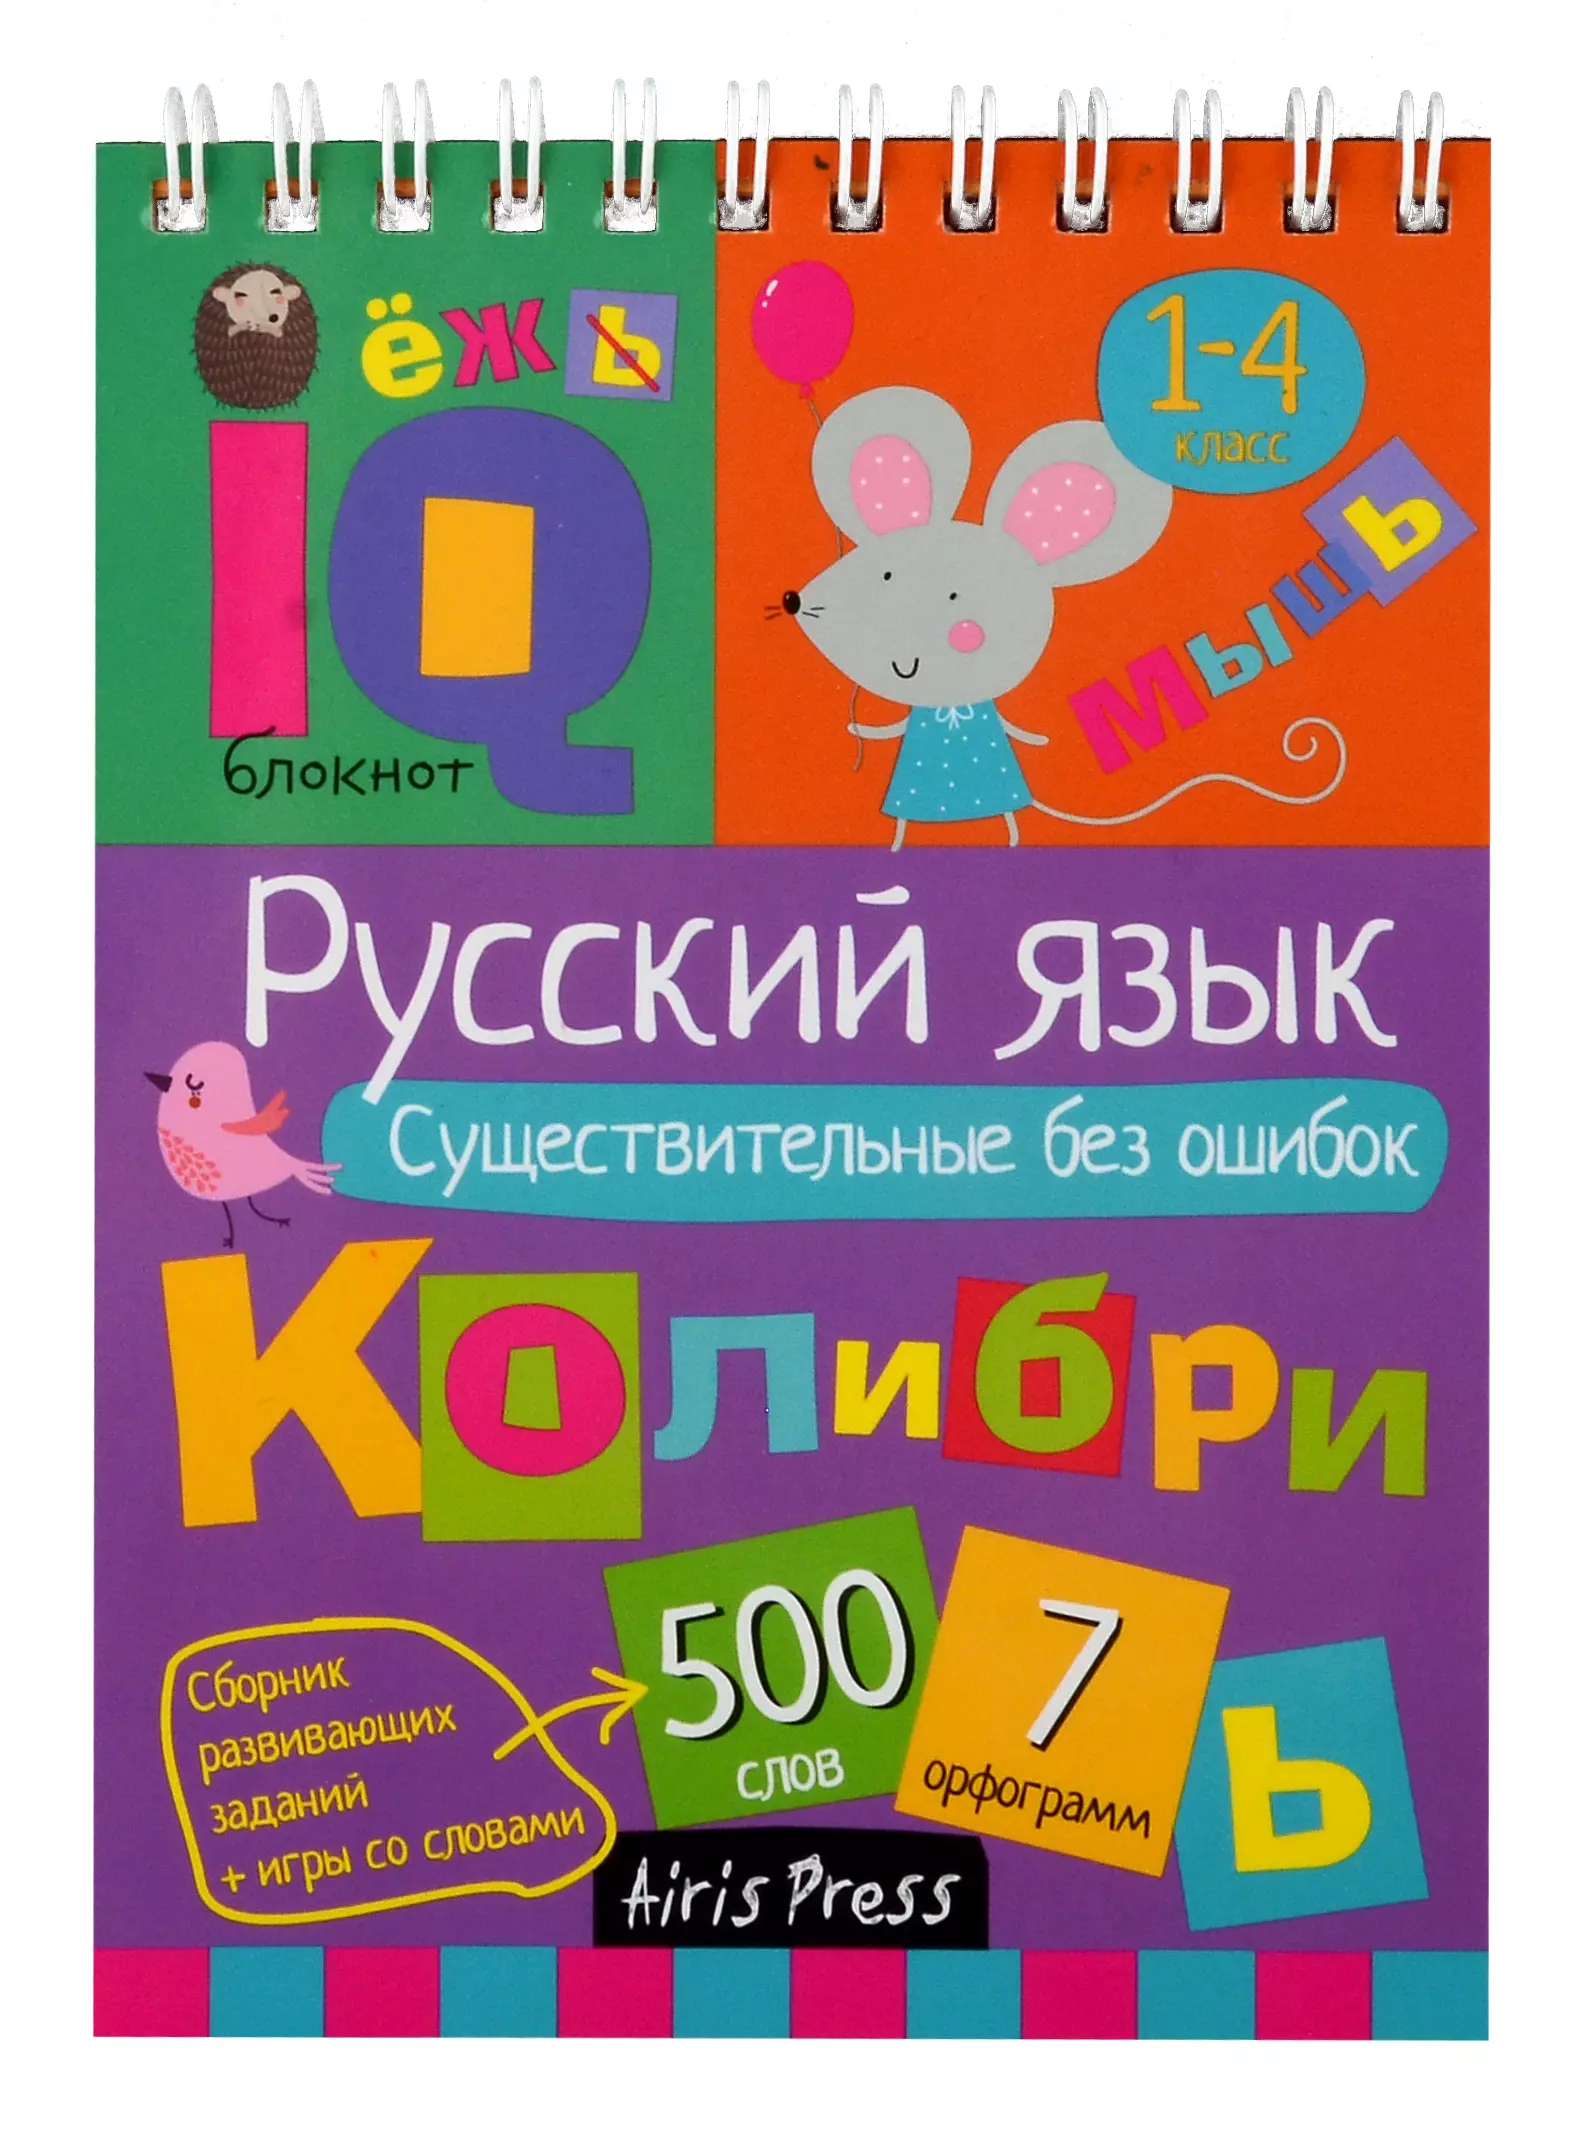 Овчинникова Н. Н. IQ блокнот. Русский язык. Существительные без ошибок. 1-4 класс